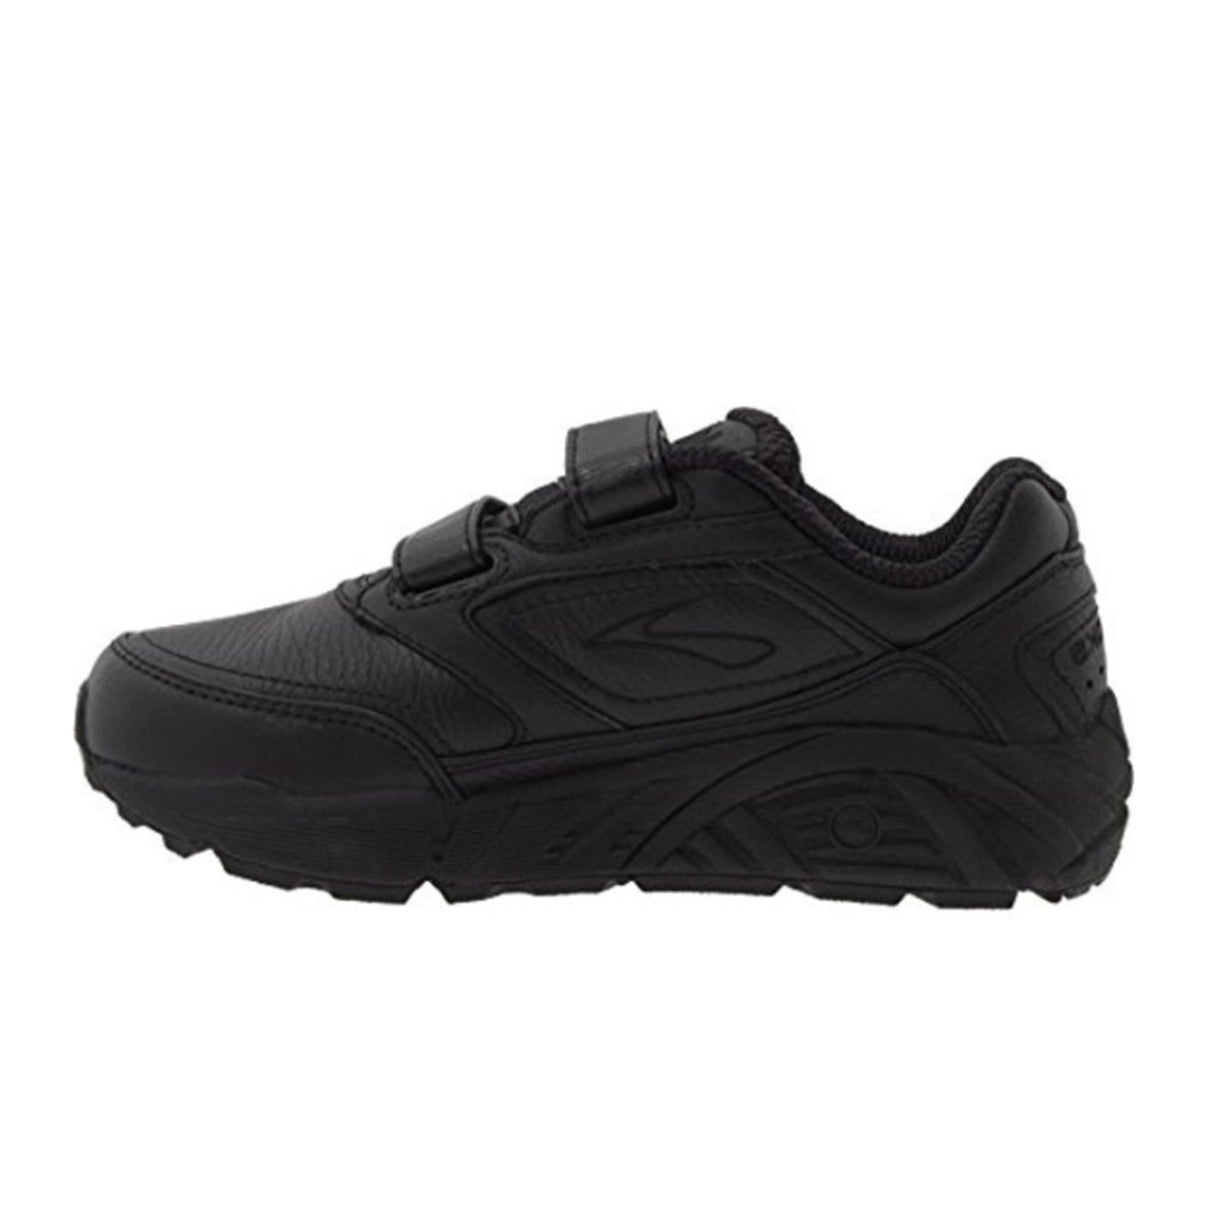 Brooks Addiction Walker V-Strap Walking Shoe (Women) - Black Athletic - Walking - The Heel Shoe Fitters